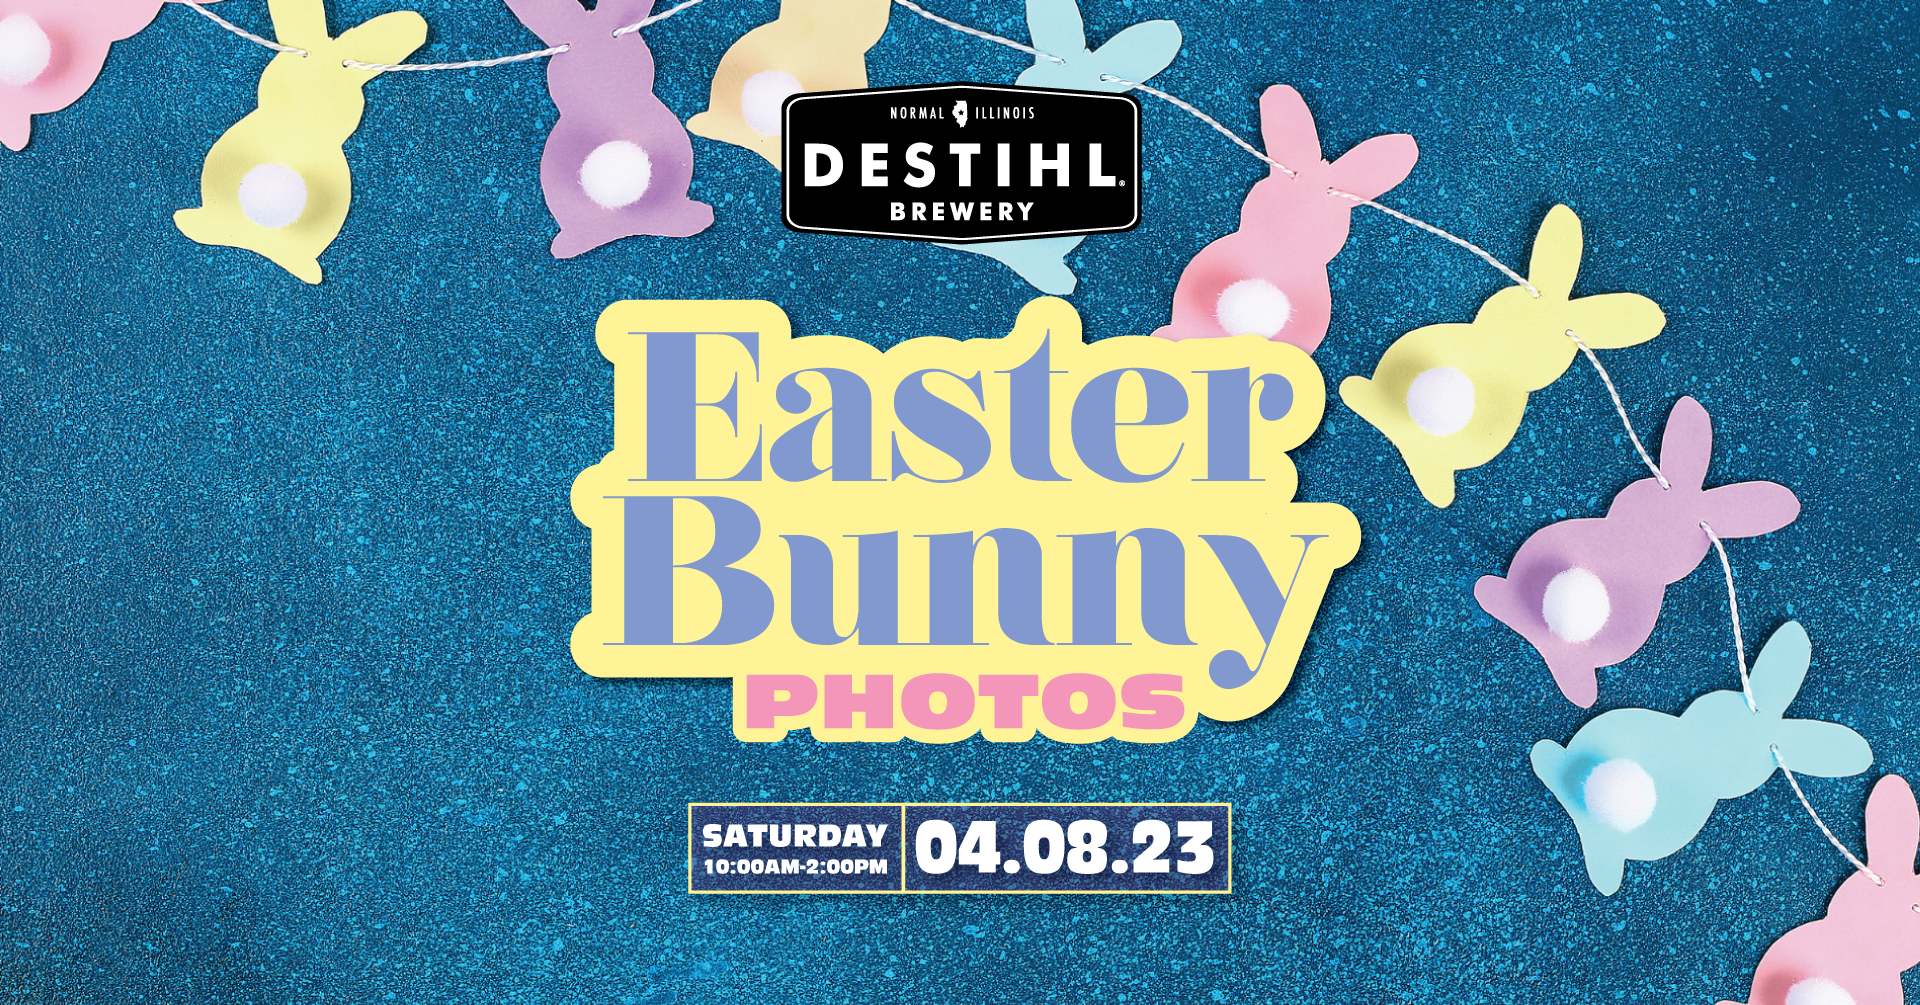 Easter Bunny Photos at DESTIHL!